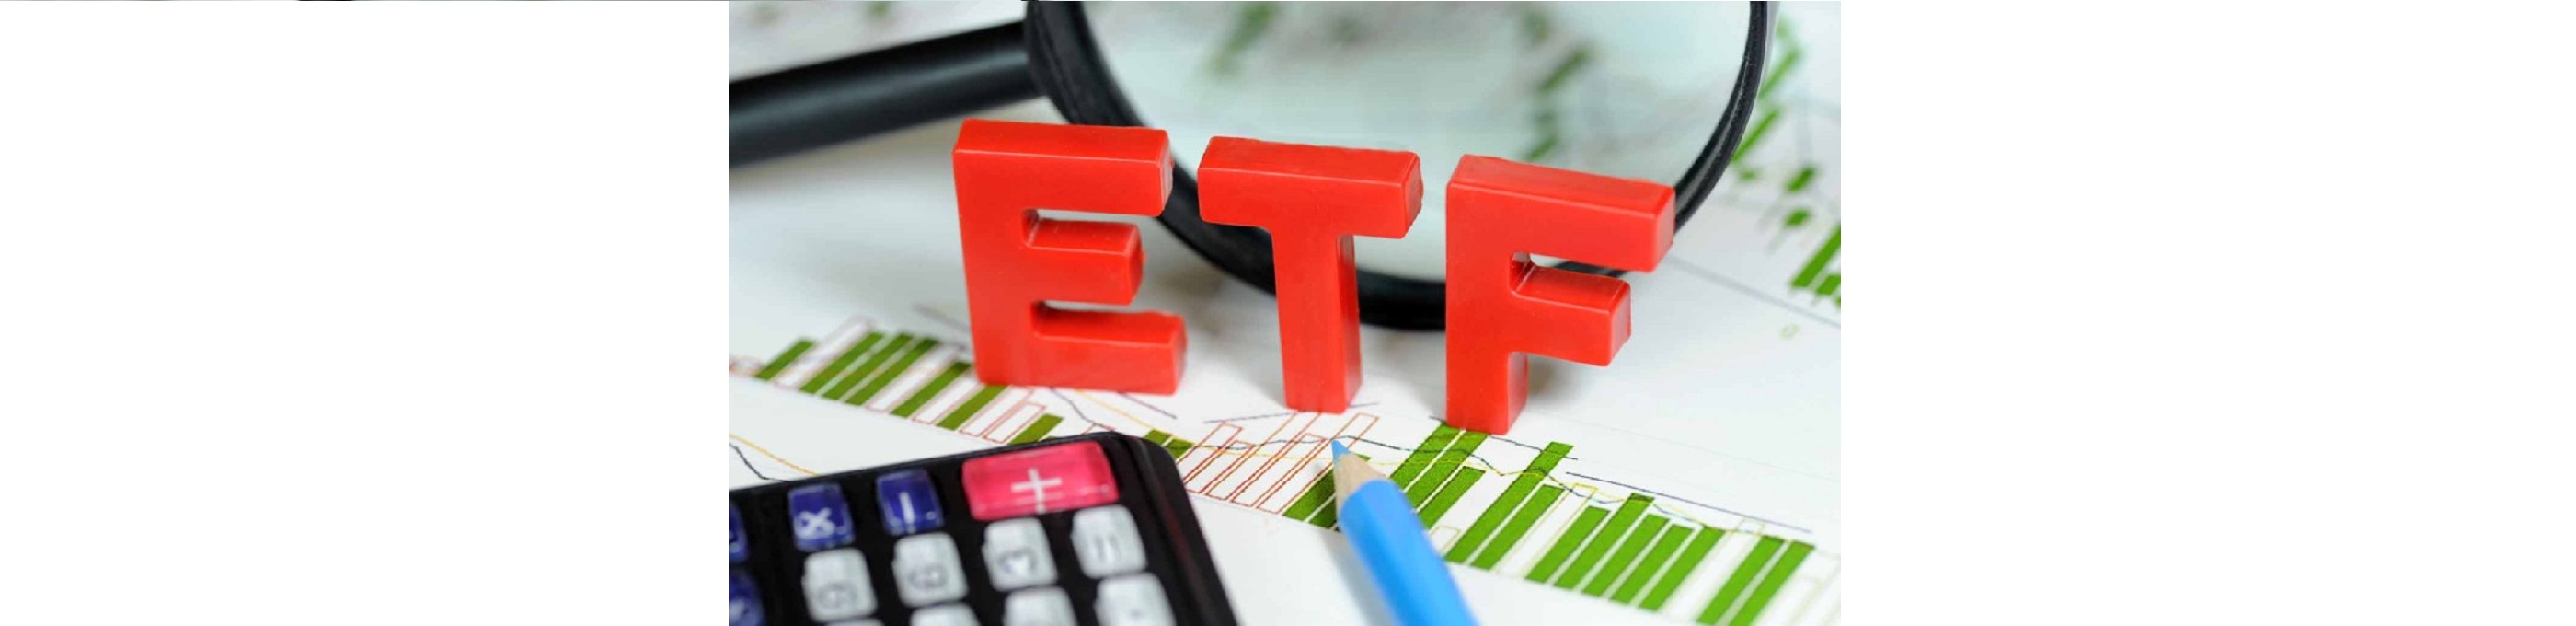 Банк решил предложить клиентам ETF – биржевые фонды как площадка для размещения инвестиций достаточно популярны на мировом финансовом рынке